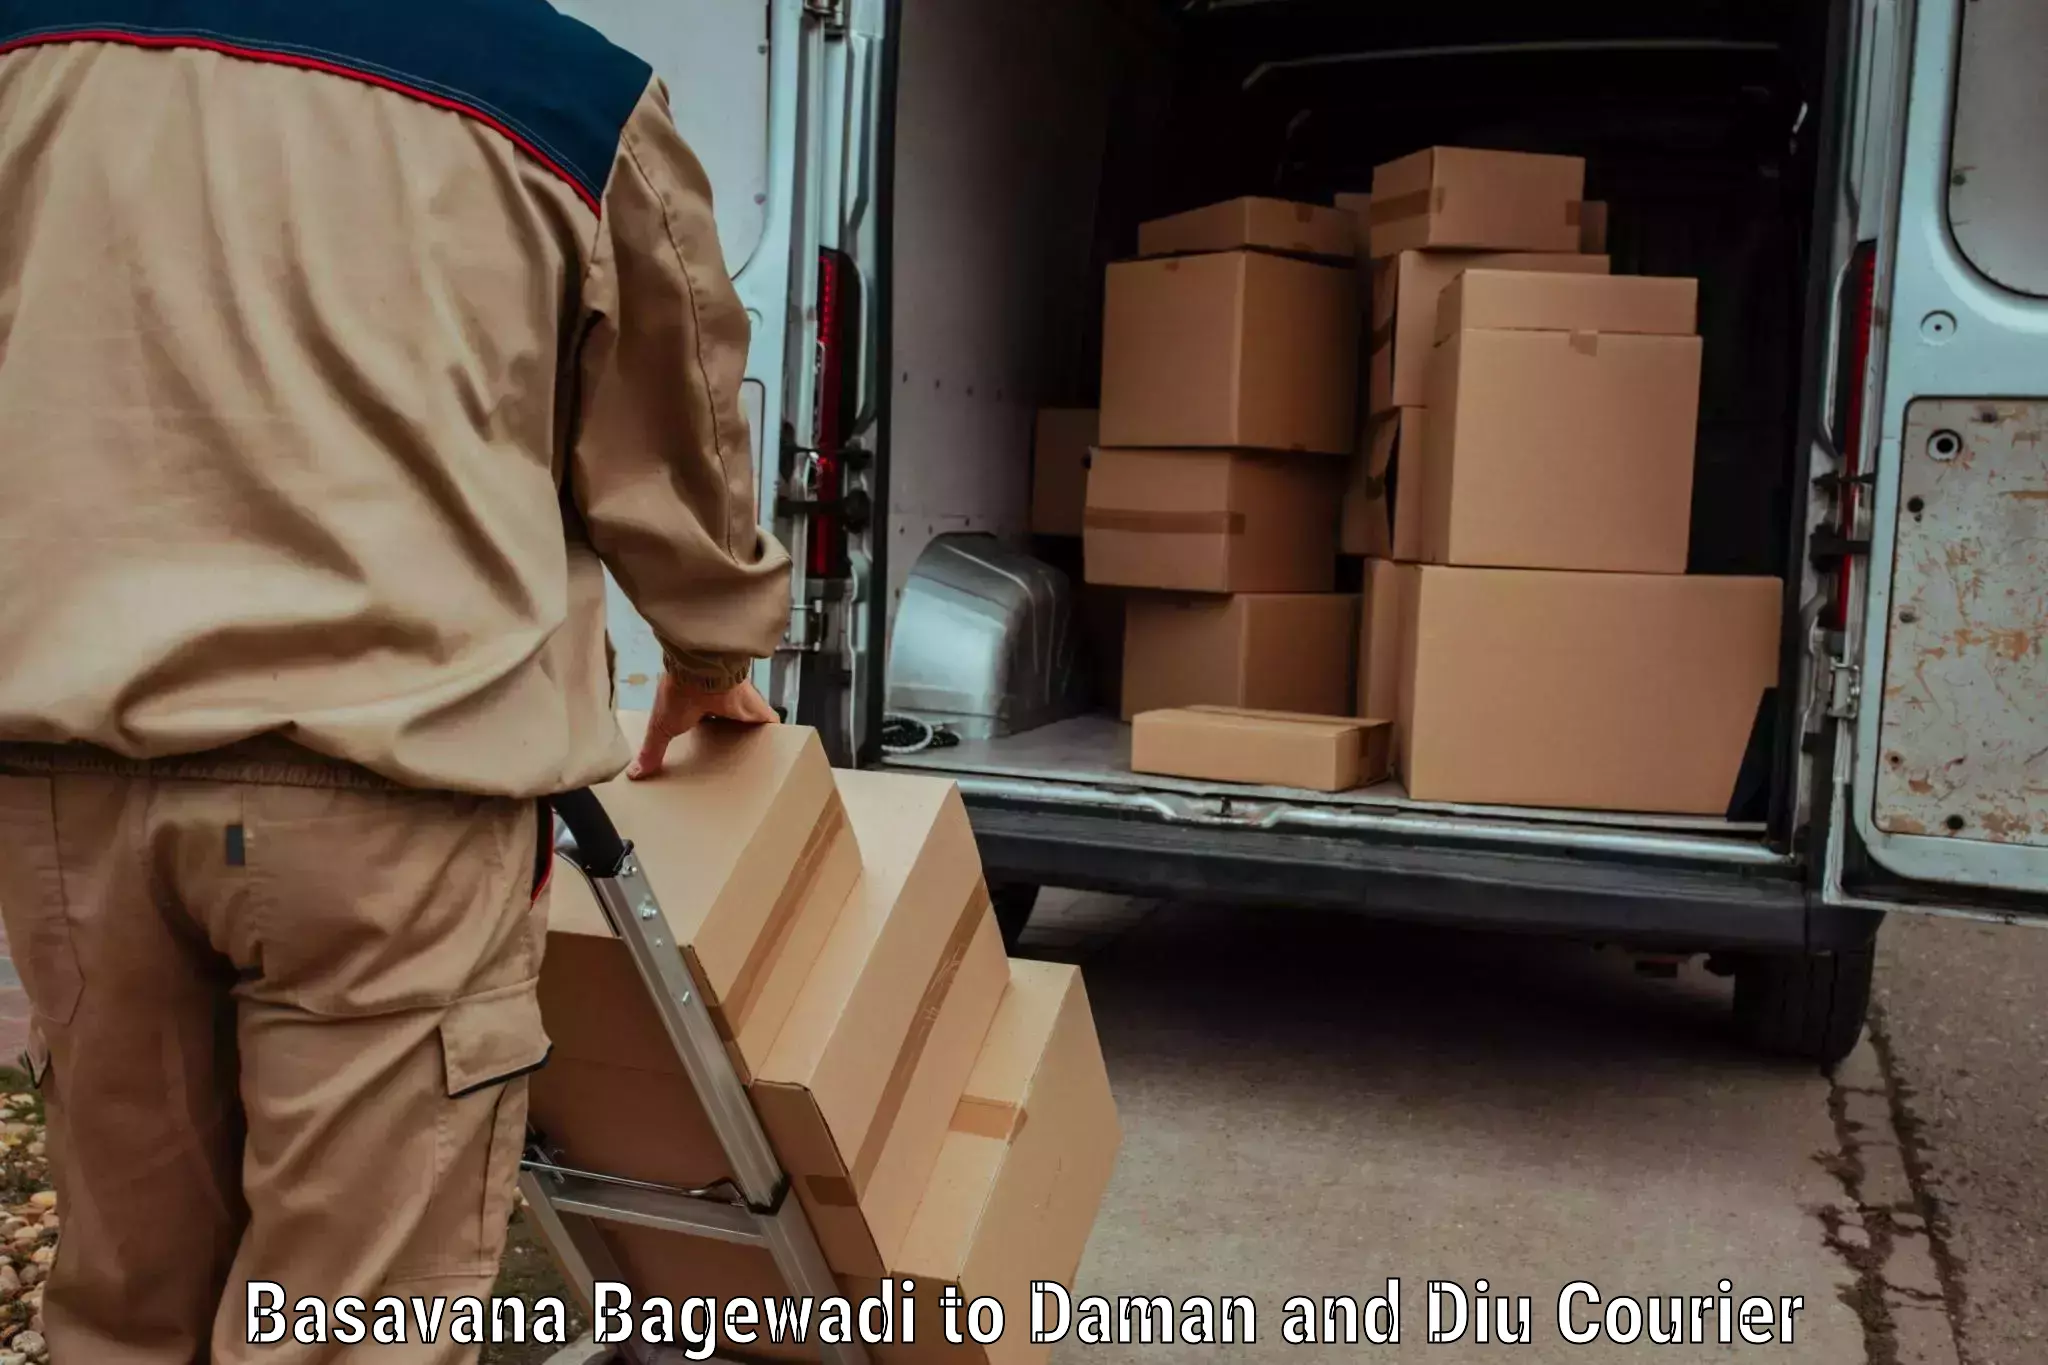 Global shipping solutions Basavana Bagewadi to Daman